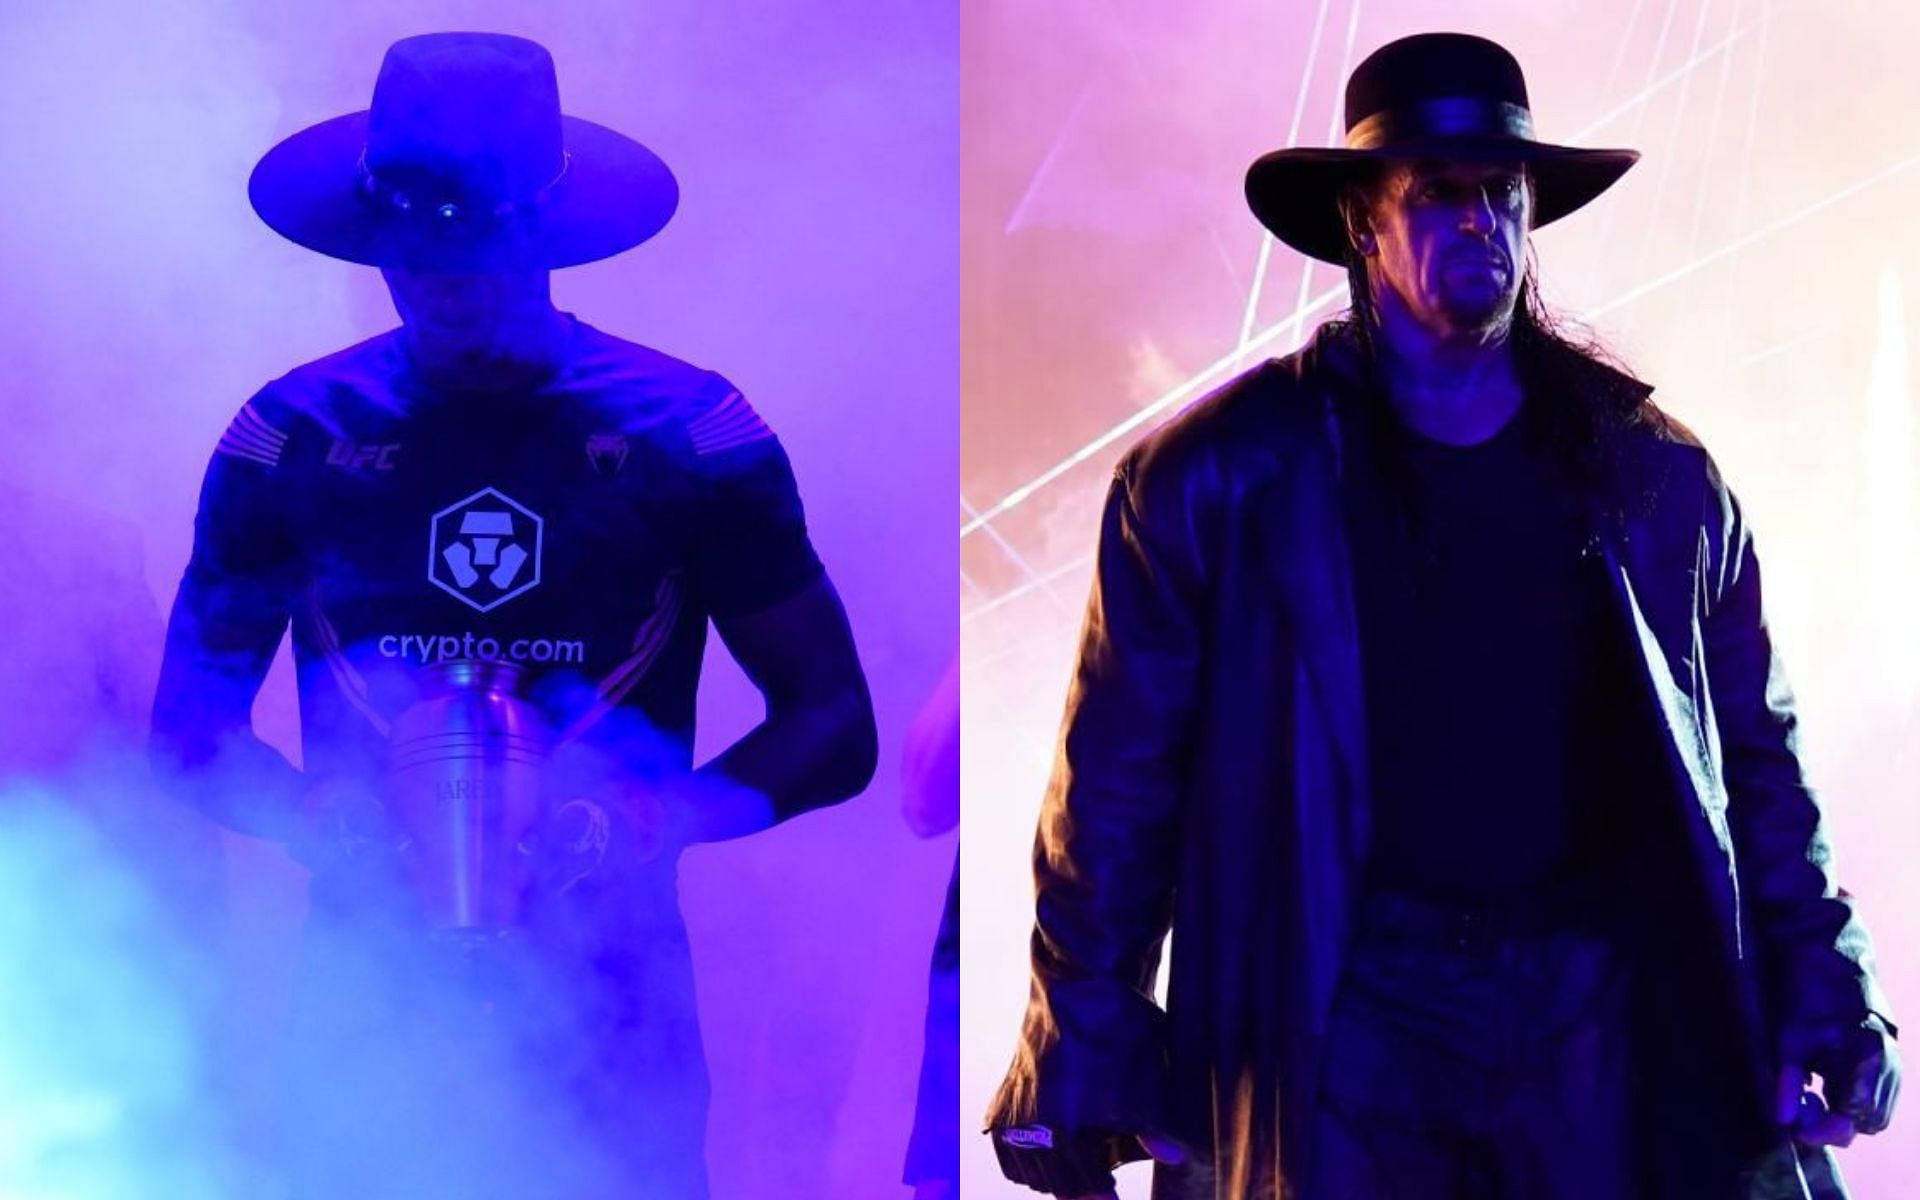 Israel Adesanya [Left] Undertaker [Right]